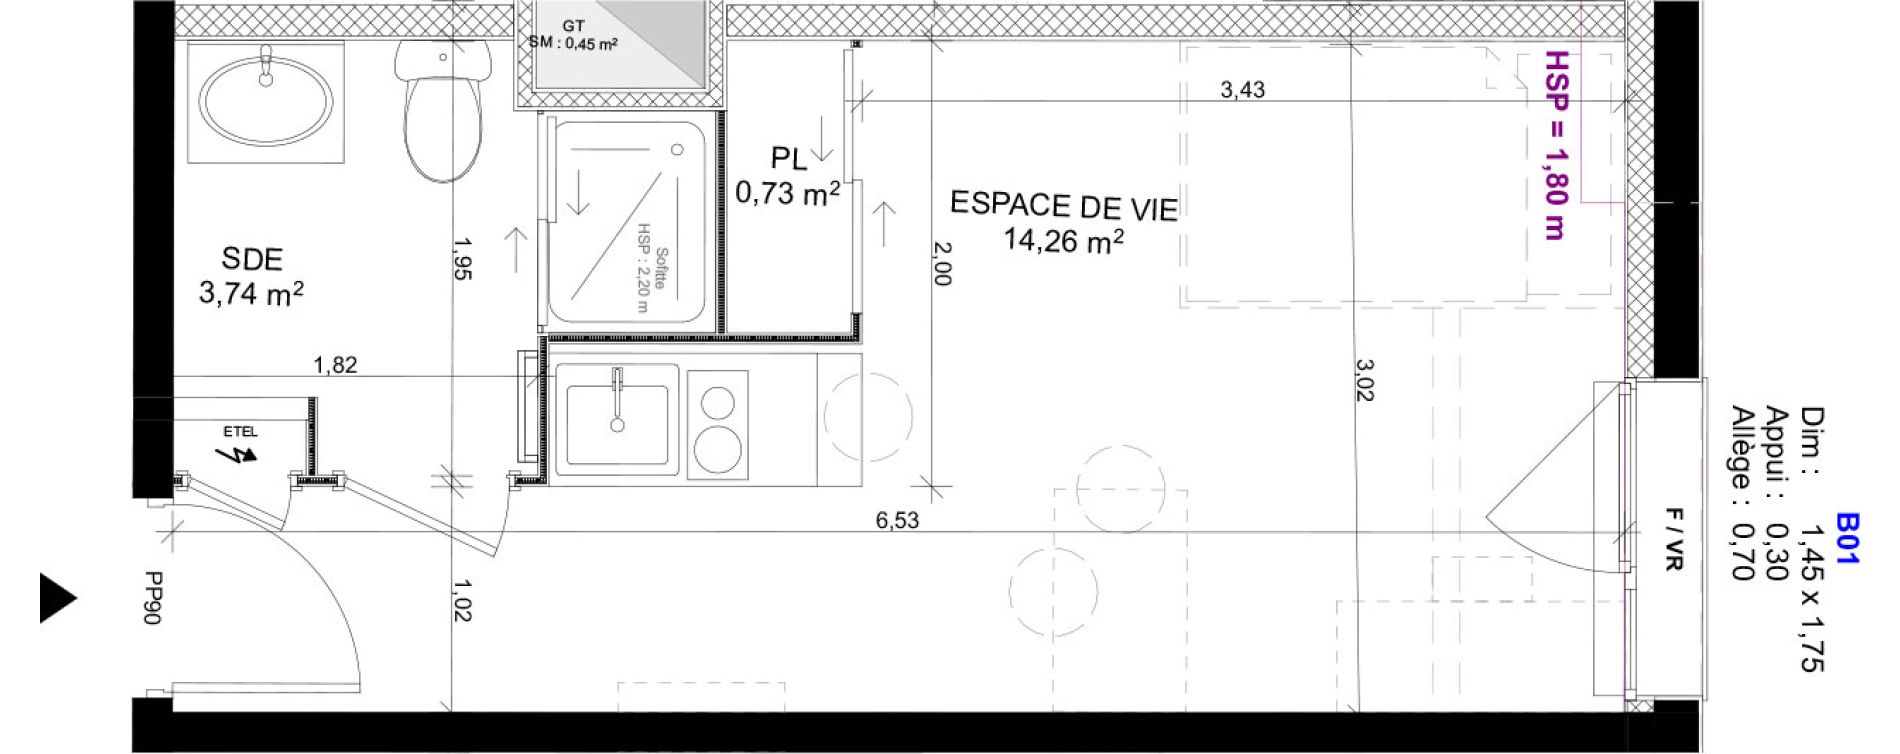 Appartement T1 meubl&eacute; de 18,73 m2 au Havre Sainte marie - saint leon